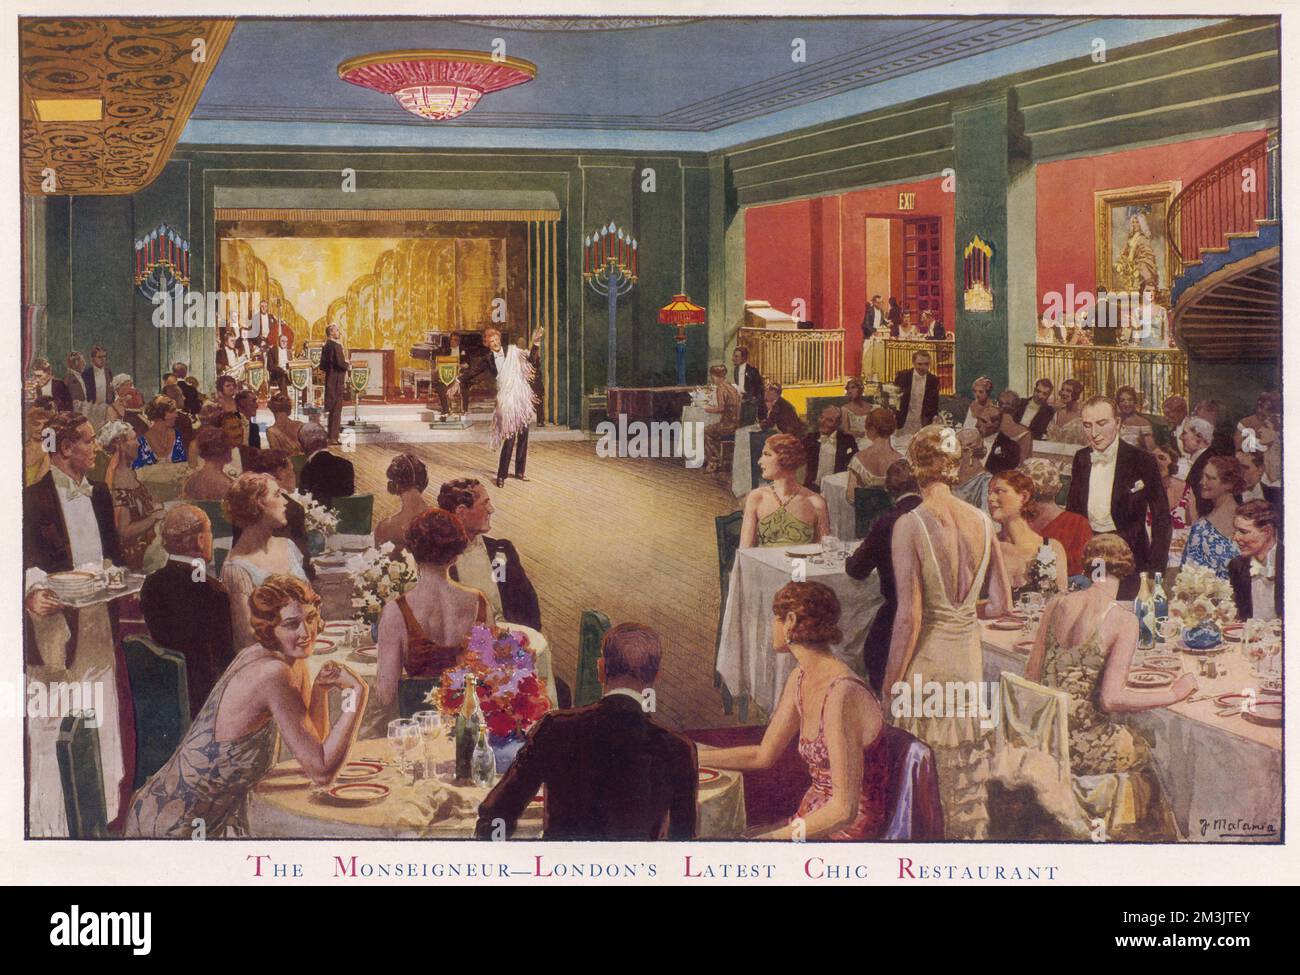 Abend im Monseigneur, einem modischen Londoner Restaurant, mit Dinner, die eine Kabarettvorstellung beobachten. Das Monseigneur Restaurant war einer der drei beliebtesten Orte für Tanzmusik in den 1930er Jahren. Es war mit dem Savoy Restaurant und dem Mayfair Hotel als Top-Showcase für die populäre Musik des Tages konkurrierend. Roy Fox und Lew Stone waren die Bandleader, die den Monseigneur während der Jahre der Depression in Großbritannien bewohnten. Der bekannte Gastronomie, M. Taglioni, steht im rechten Vordergrund. Datum: 1931 Stockfoto